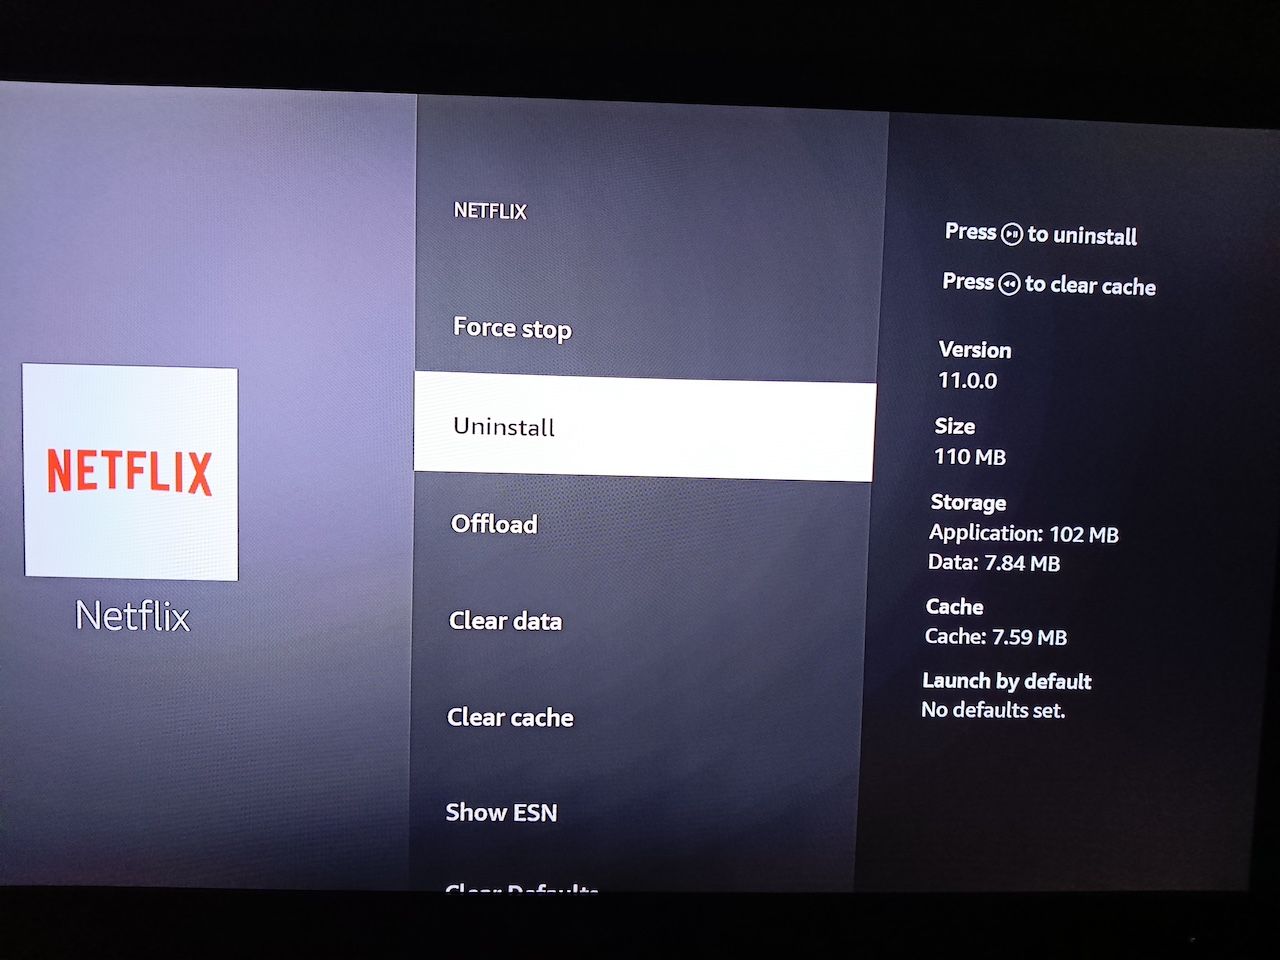 Desinstalando o Netflix no Amazon Fire TV Stick